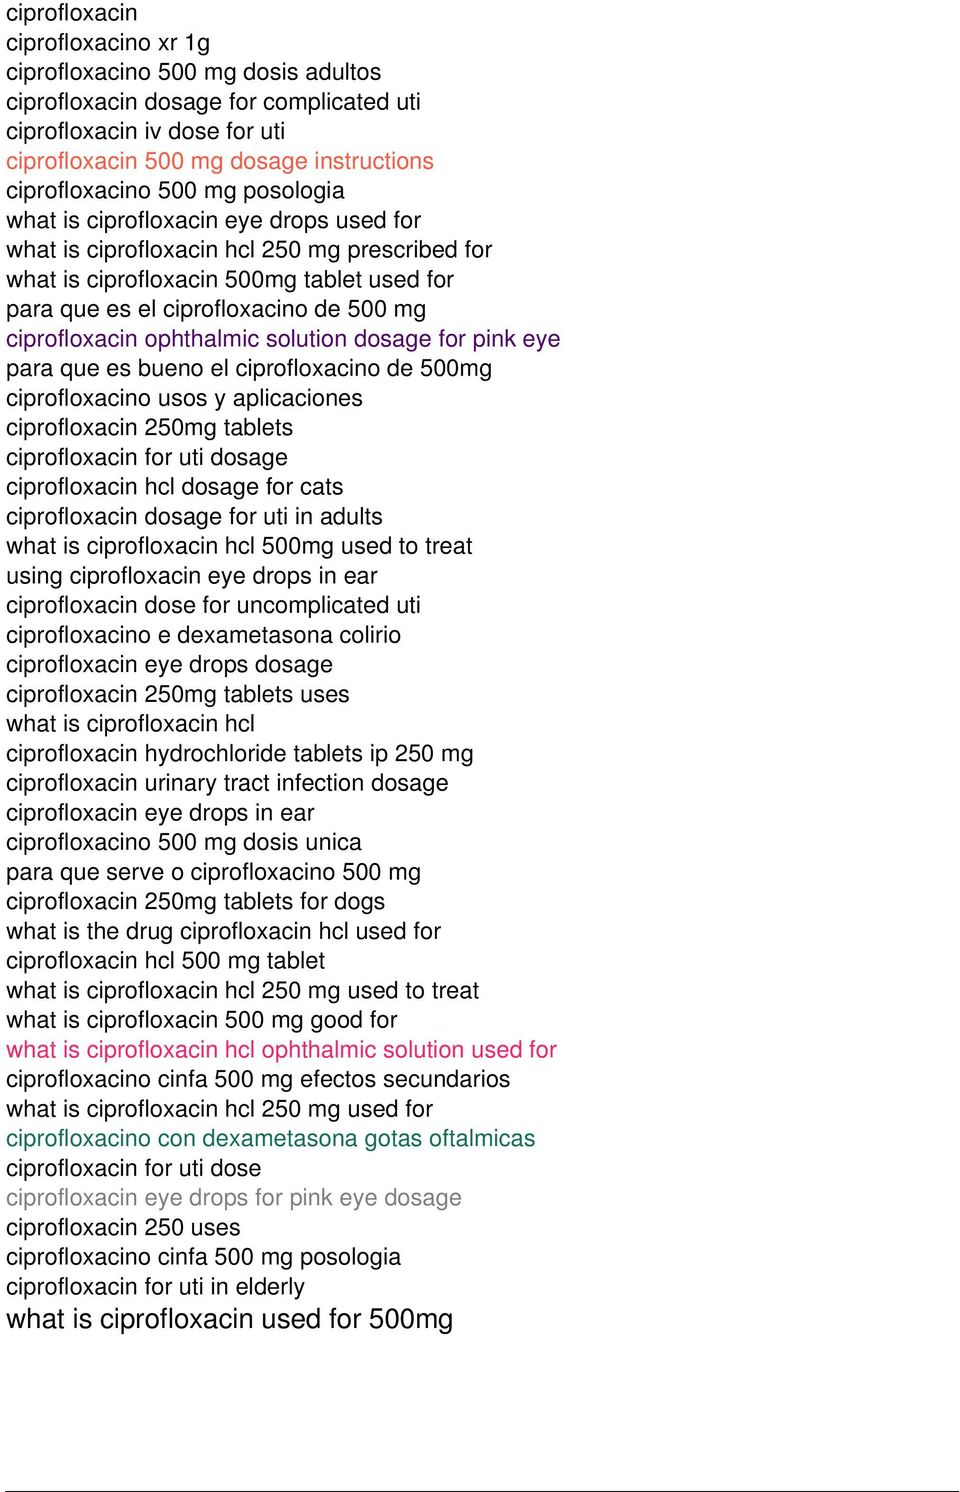 ciprofloxacin ophthalmic solution dosage for pink eye para que es bueno el ciprofloxacino de 500mg ciprofloxacino usos y aplicaciones ciprofloxacin 250mg tablets ciprofloxacin for uti dosage